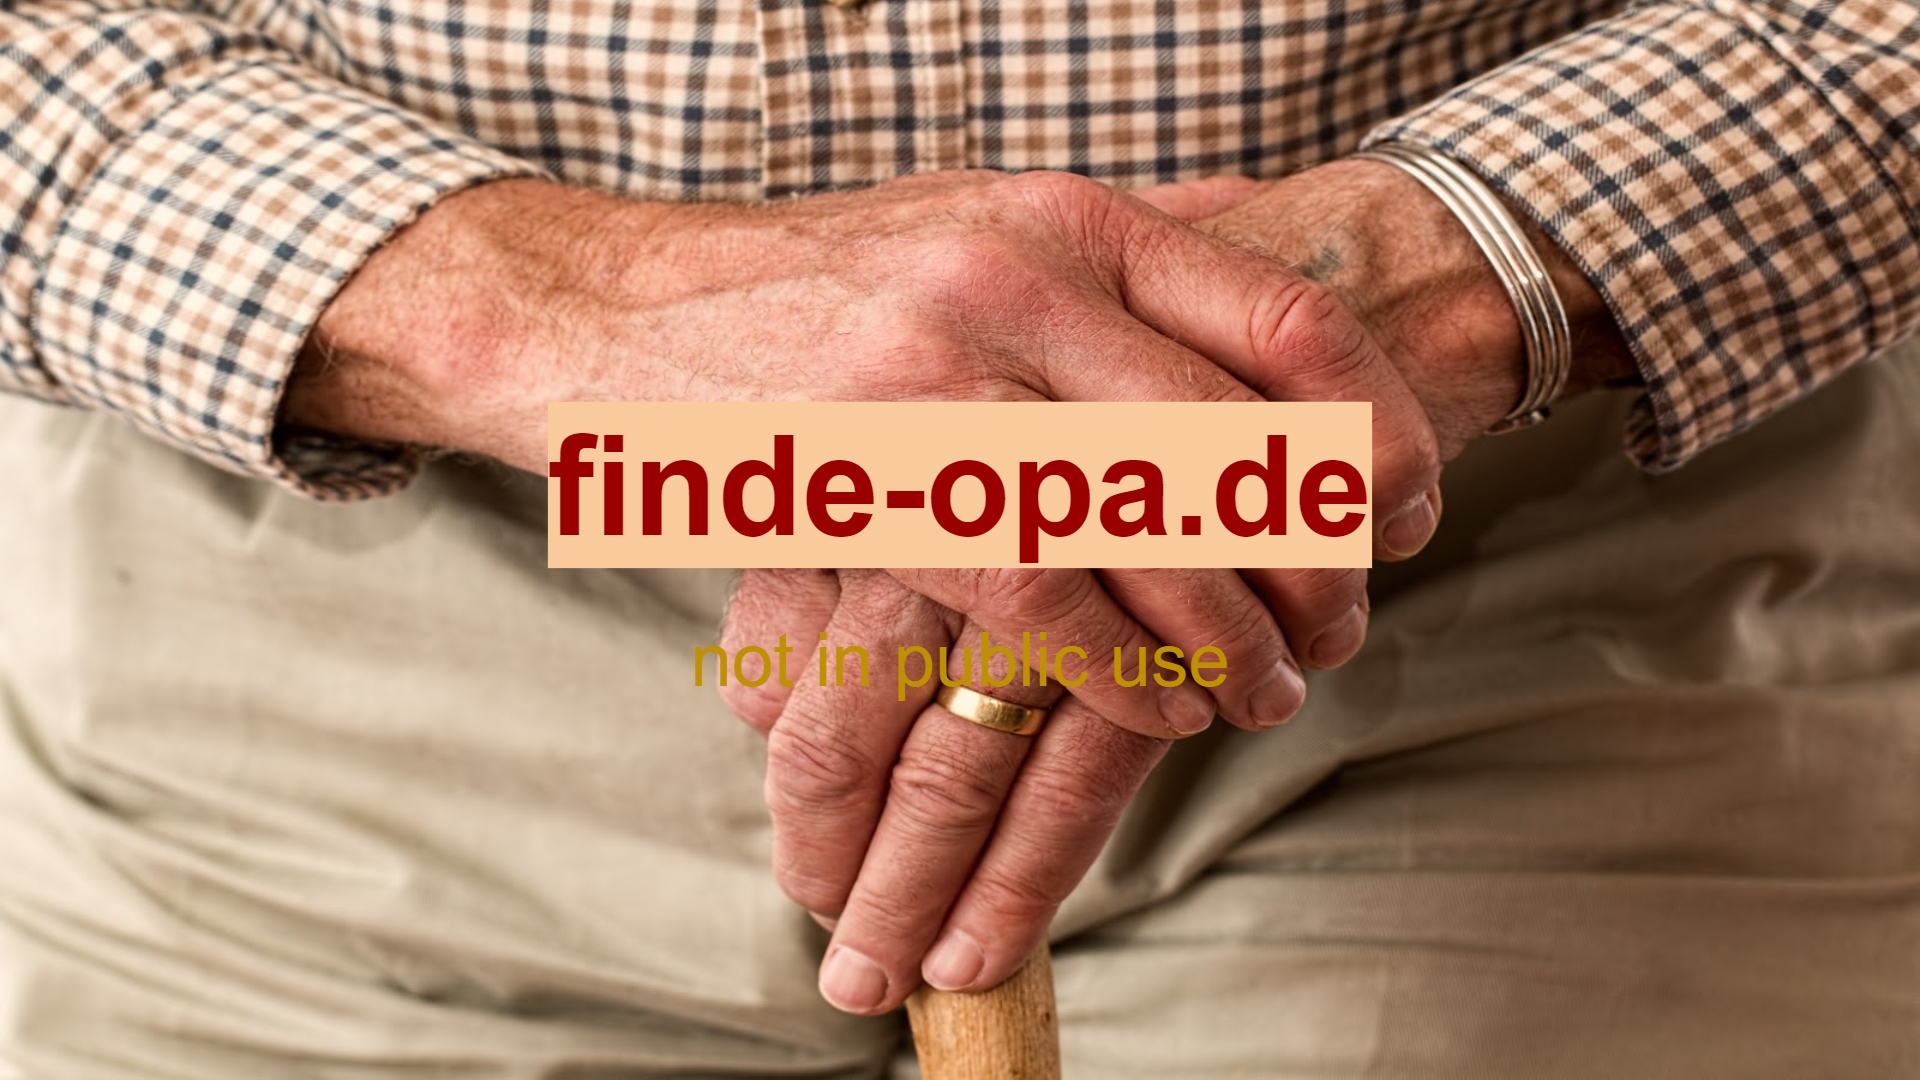 www.finde-opa.de